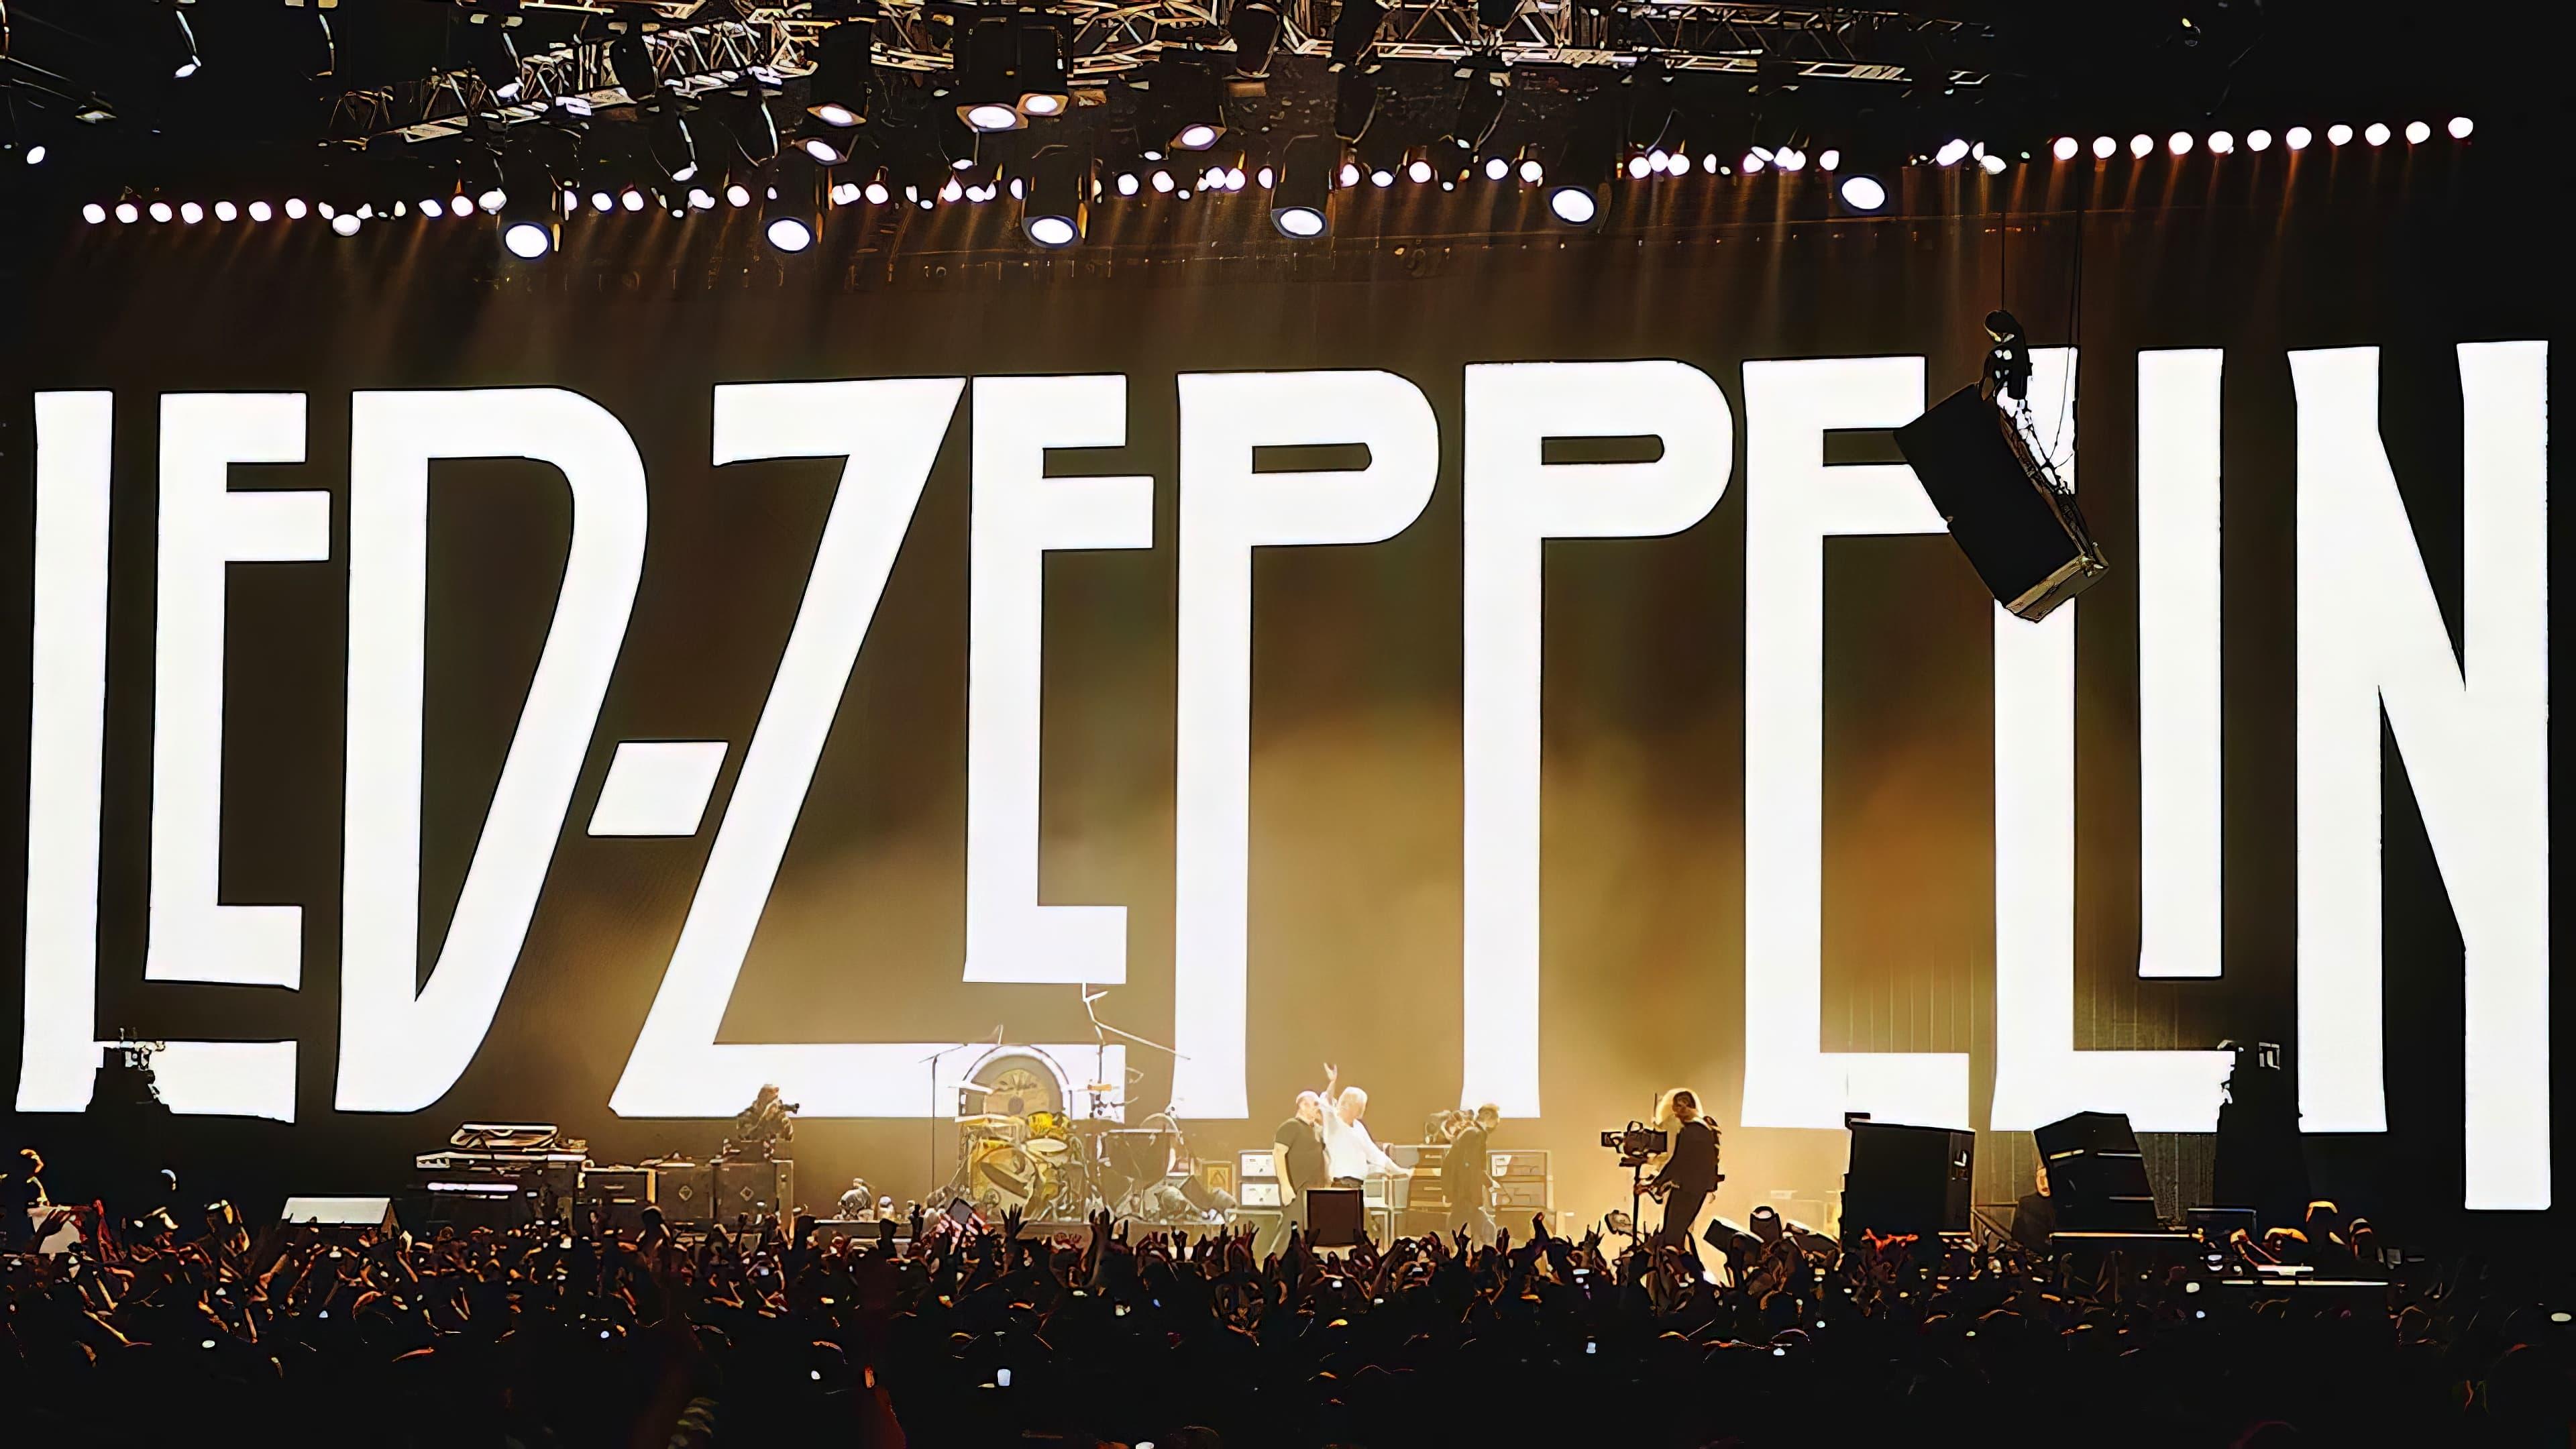 Led Zeppelin: Celebration Day backdrop